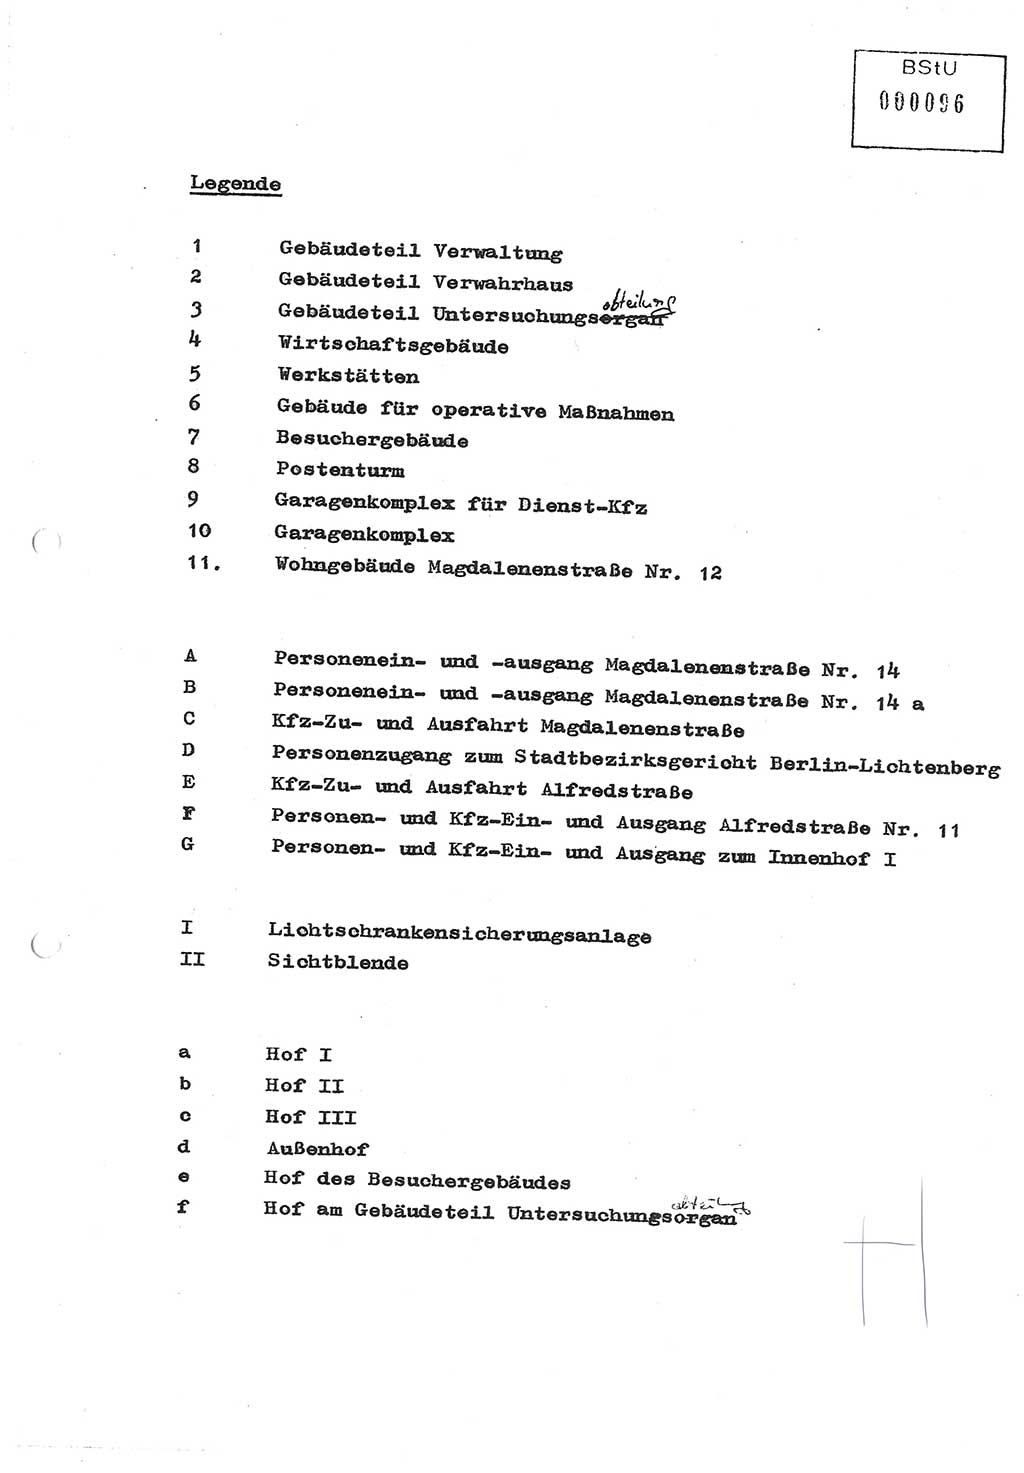 Diplomarbeit (Entwurf) Oberleutnant Peter Parke (Abt. ⅩⅣ), Ministerium für Staatssicherheit (MfS) [Deutsche Demokratische Republik (DDR)], Juristische Hochschule (JHS), Geheime Verschlußsache (GVS) o001-98/86, Potsdam 1986, Seite 96 (Dipl.-Arb. MfS DDR JHS GVS o001-98/86 1986, S. 96)